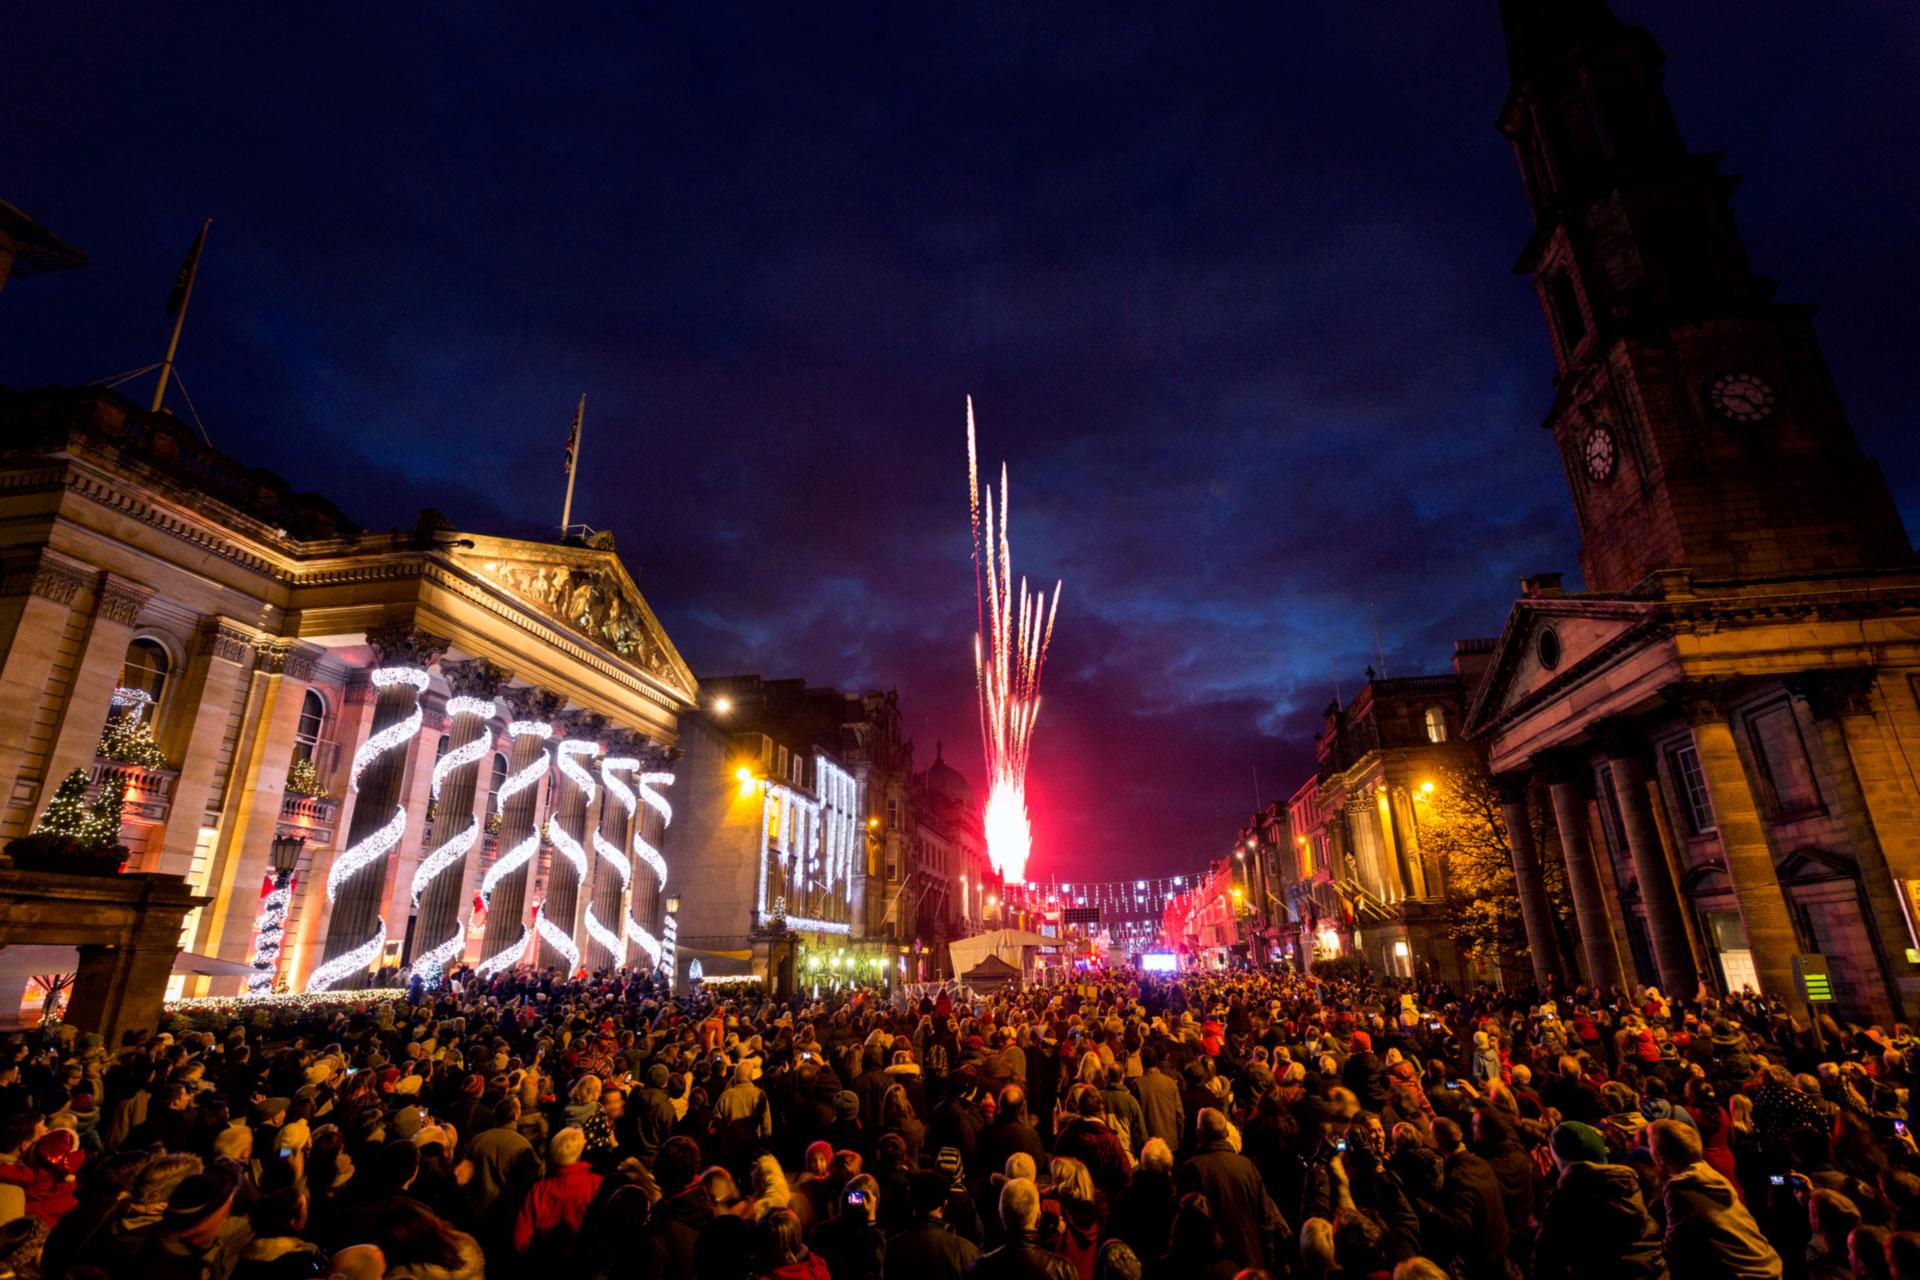 Christmas lights, lots of people in Edinburgh